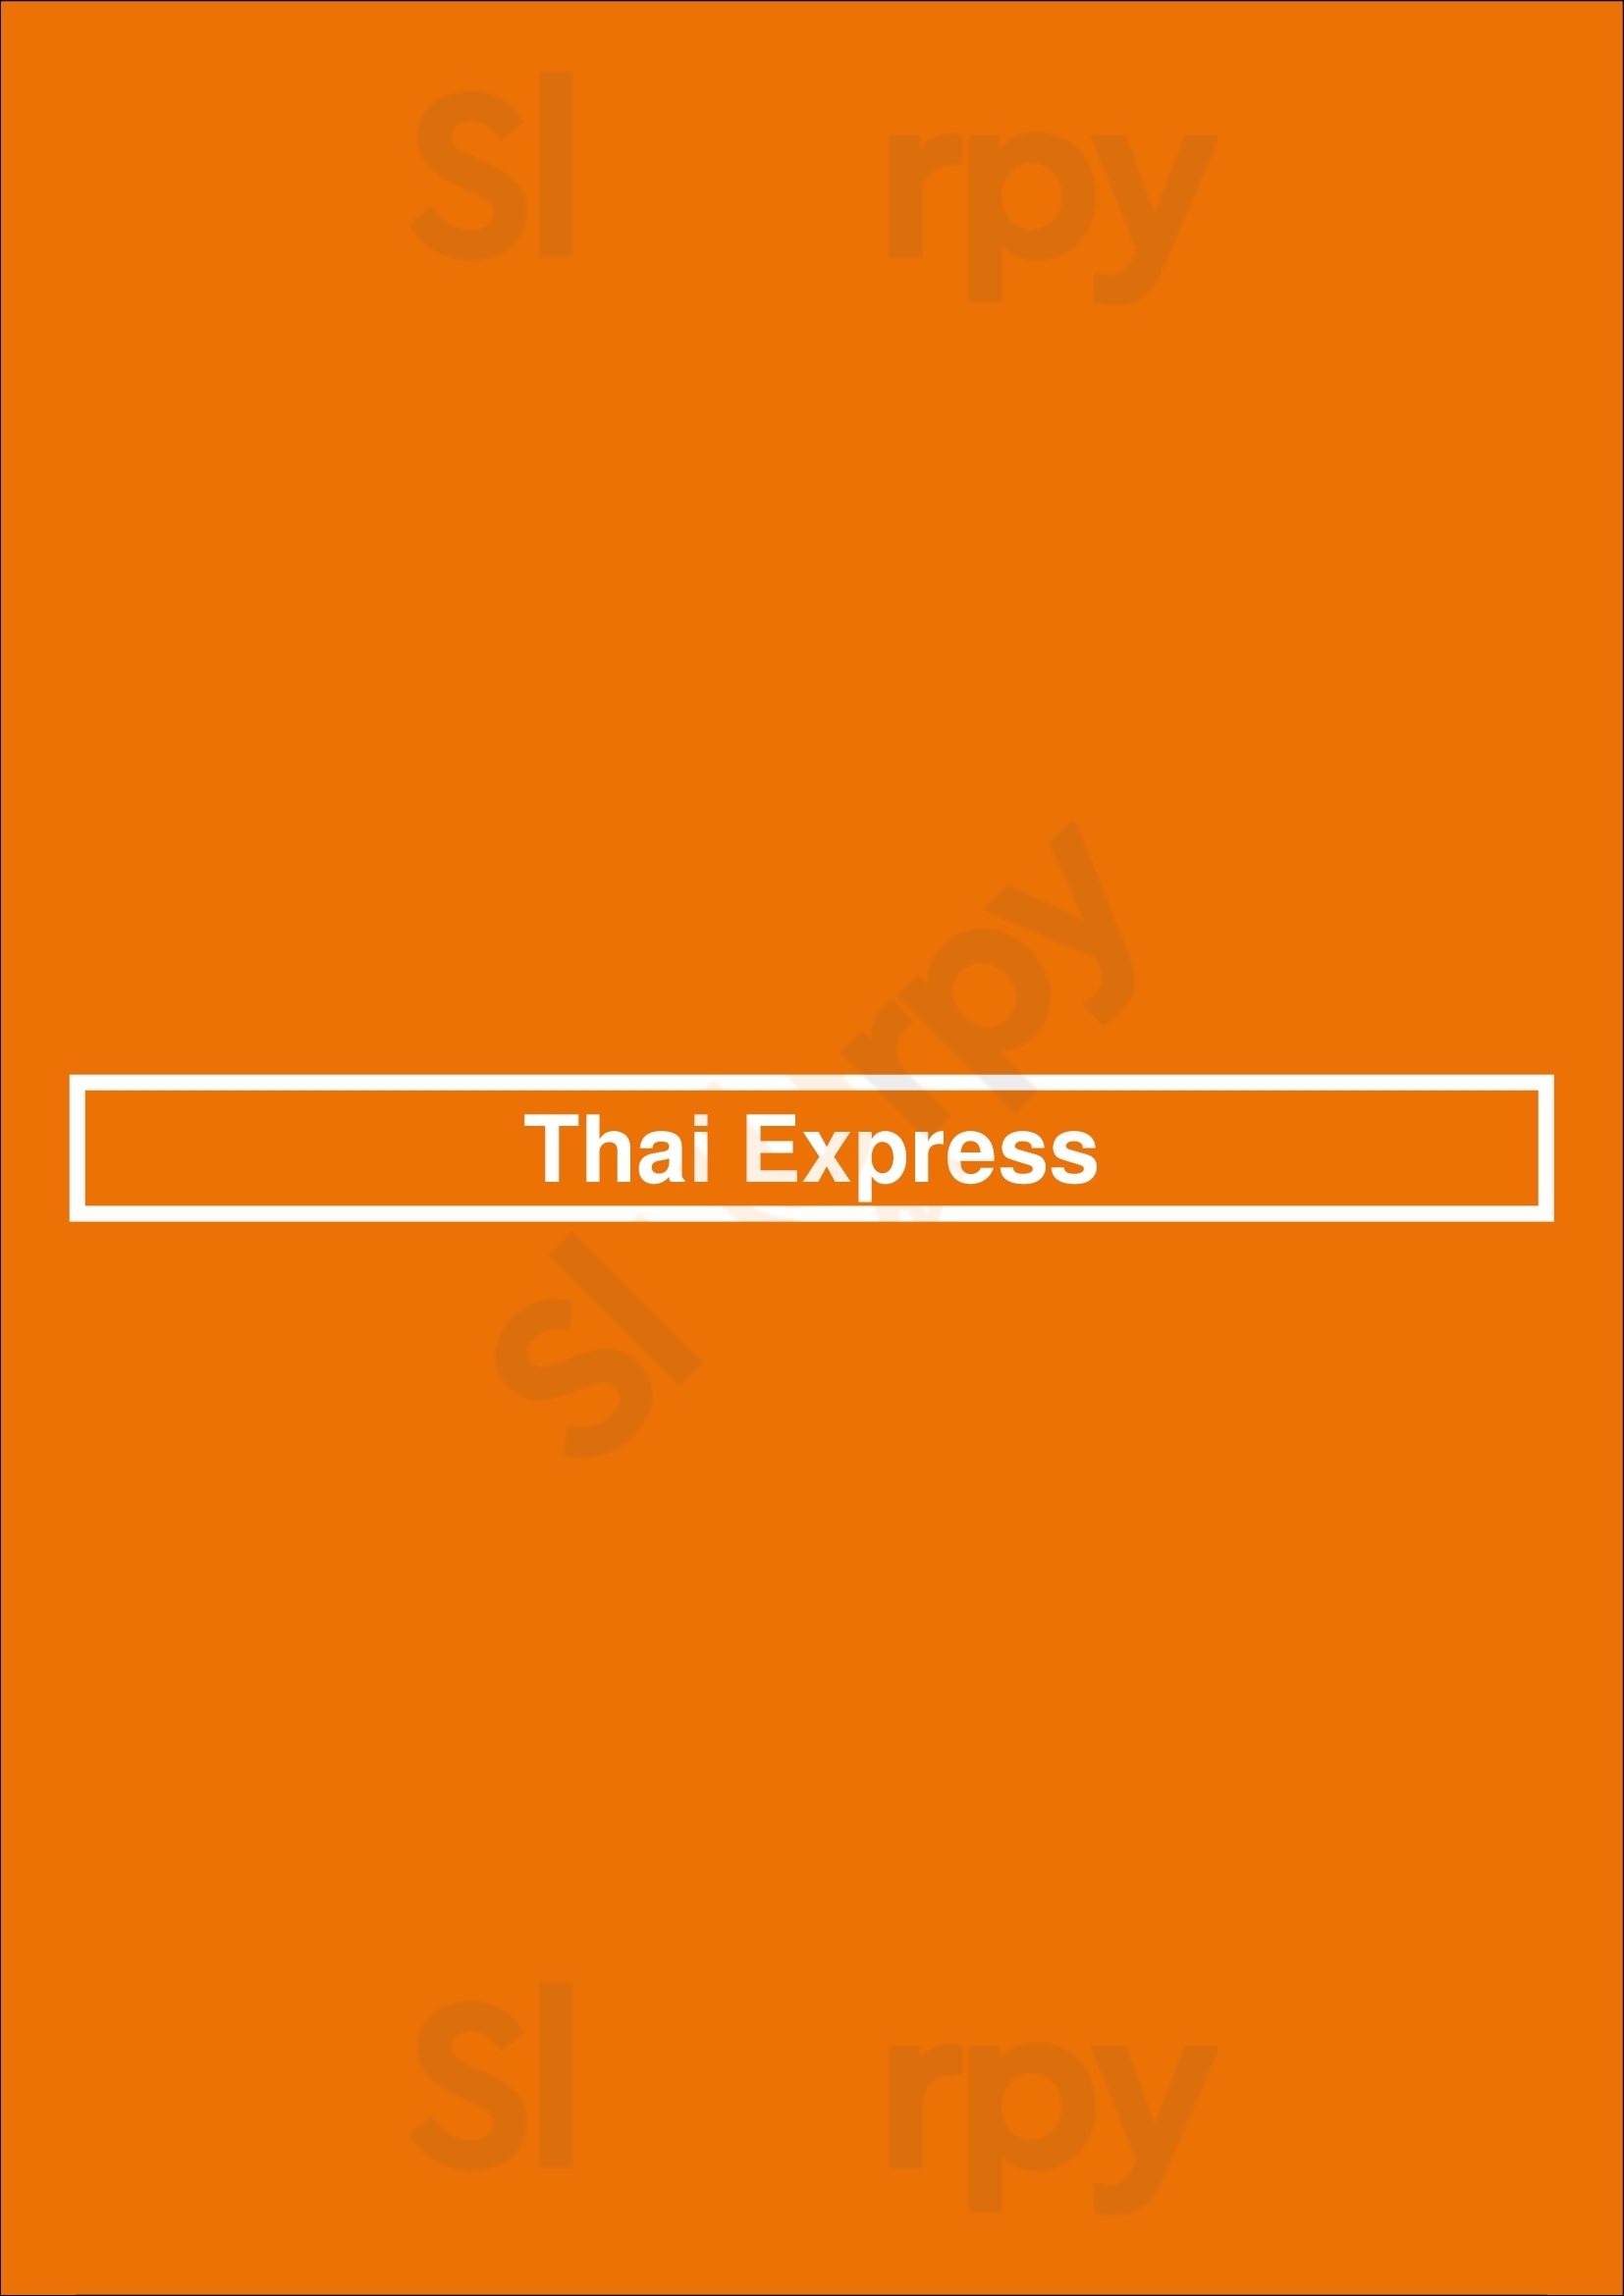 Thai Express Richmond Hill Menu - 1